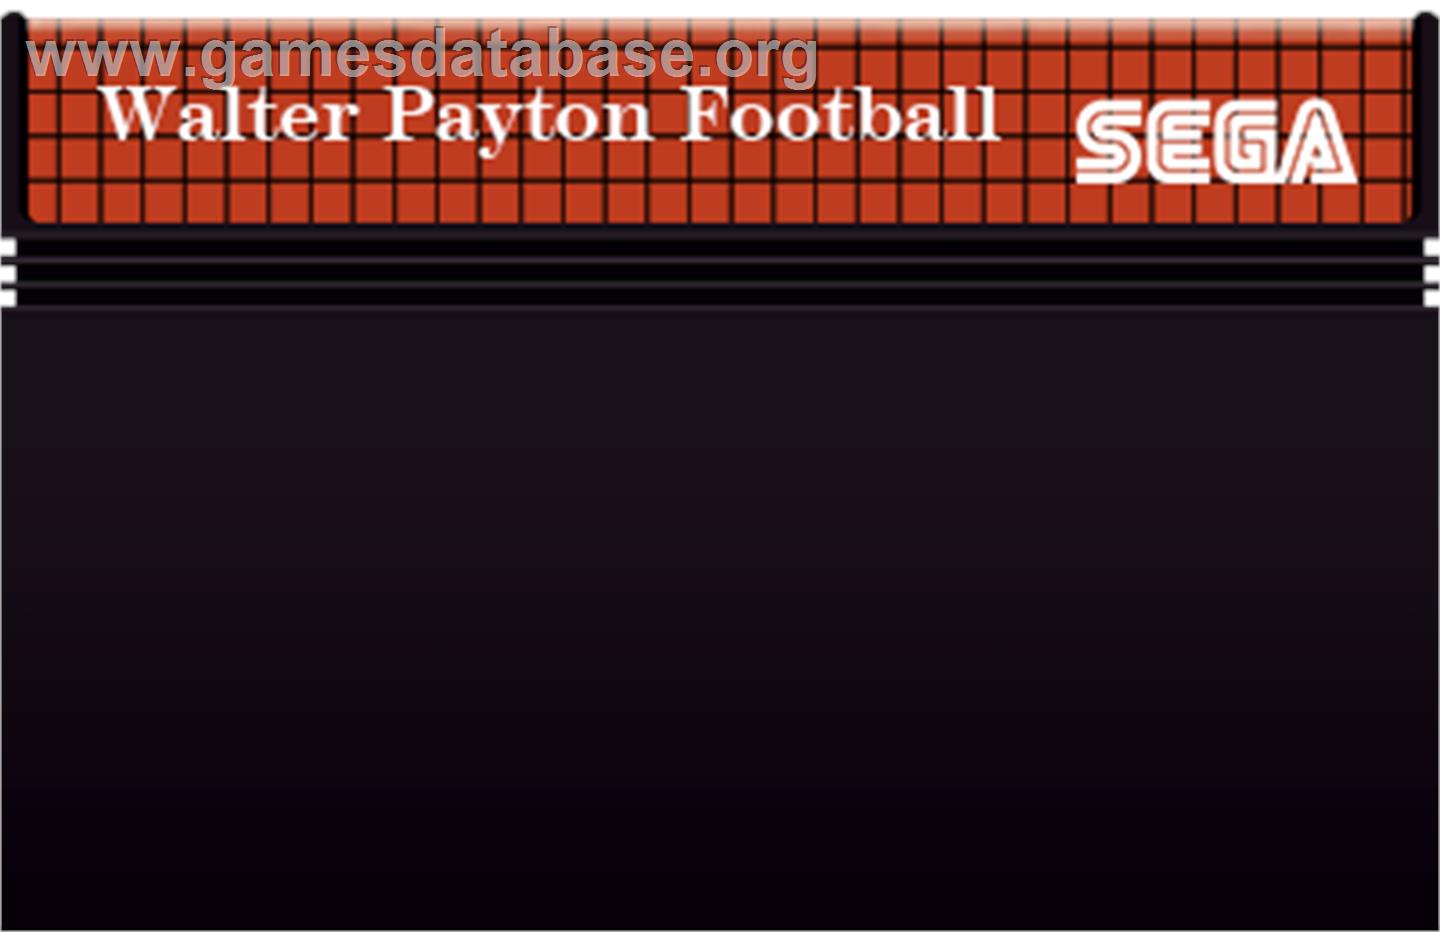 Walter Payton Football - Sega Master System - Artwork - Cartridge